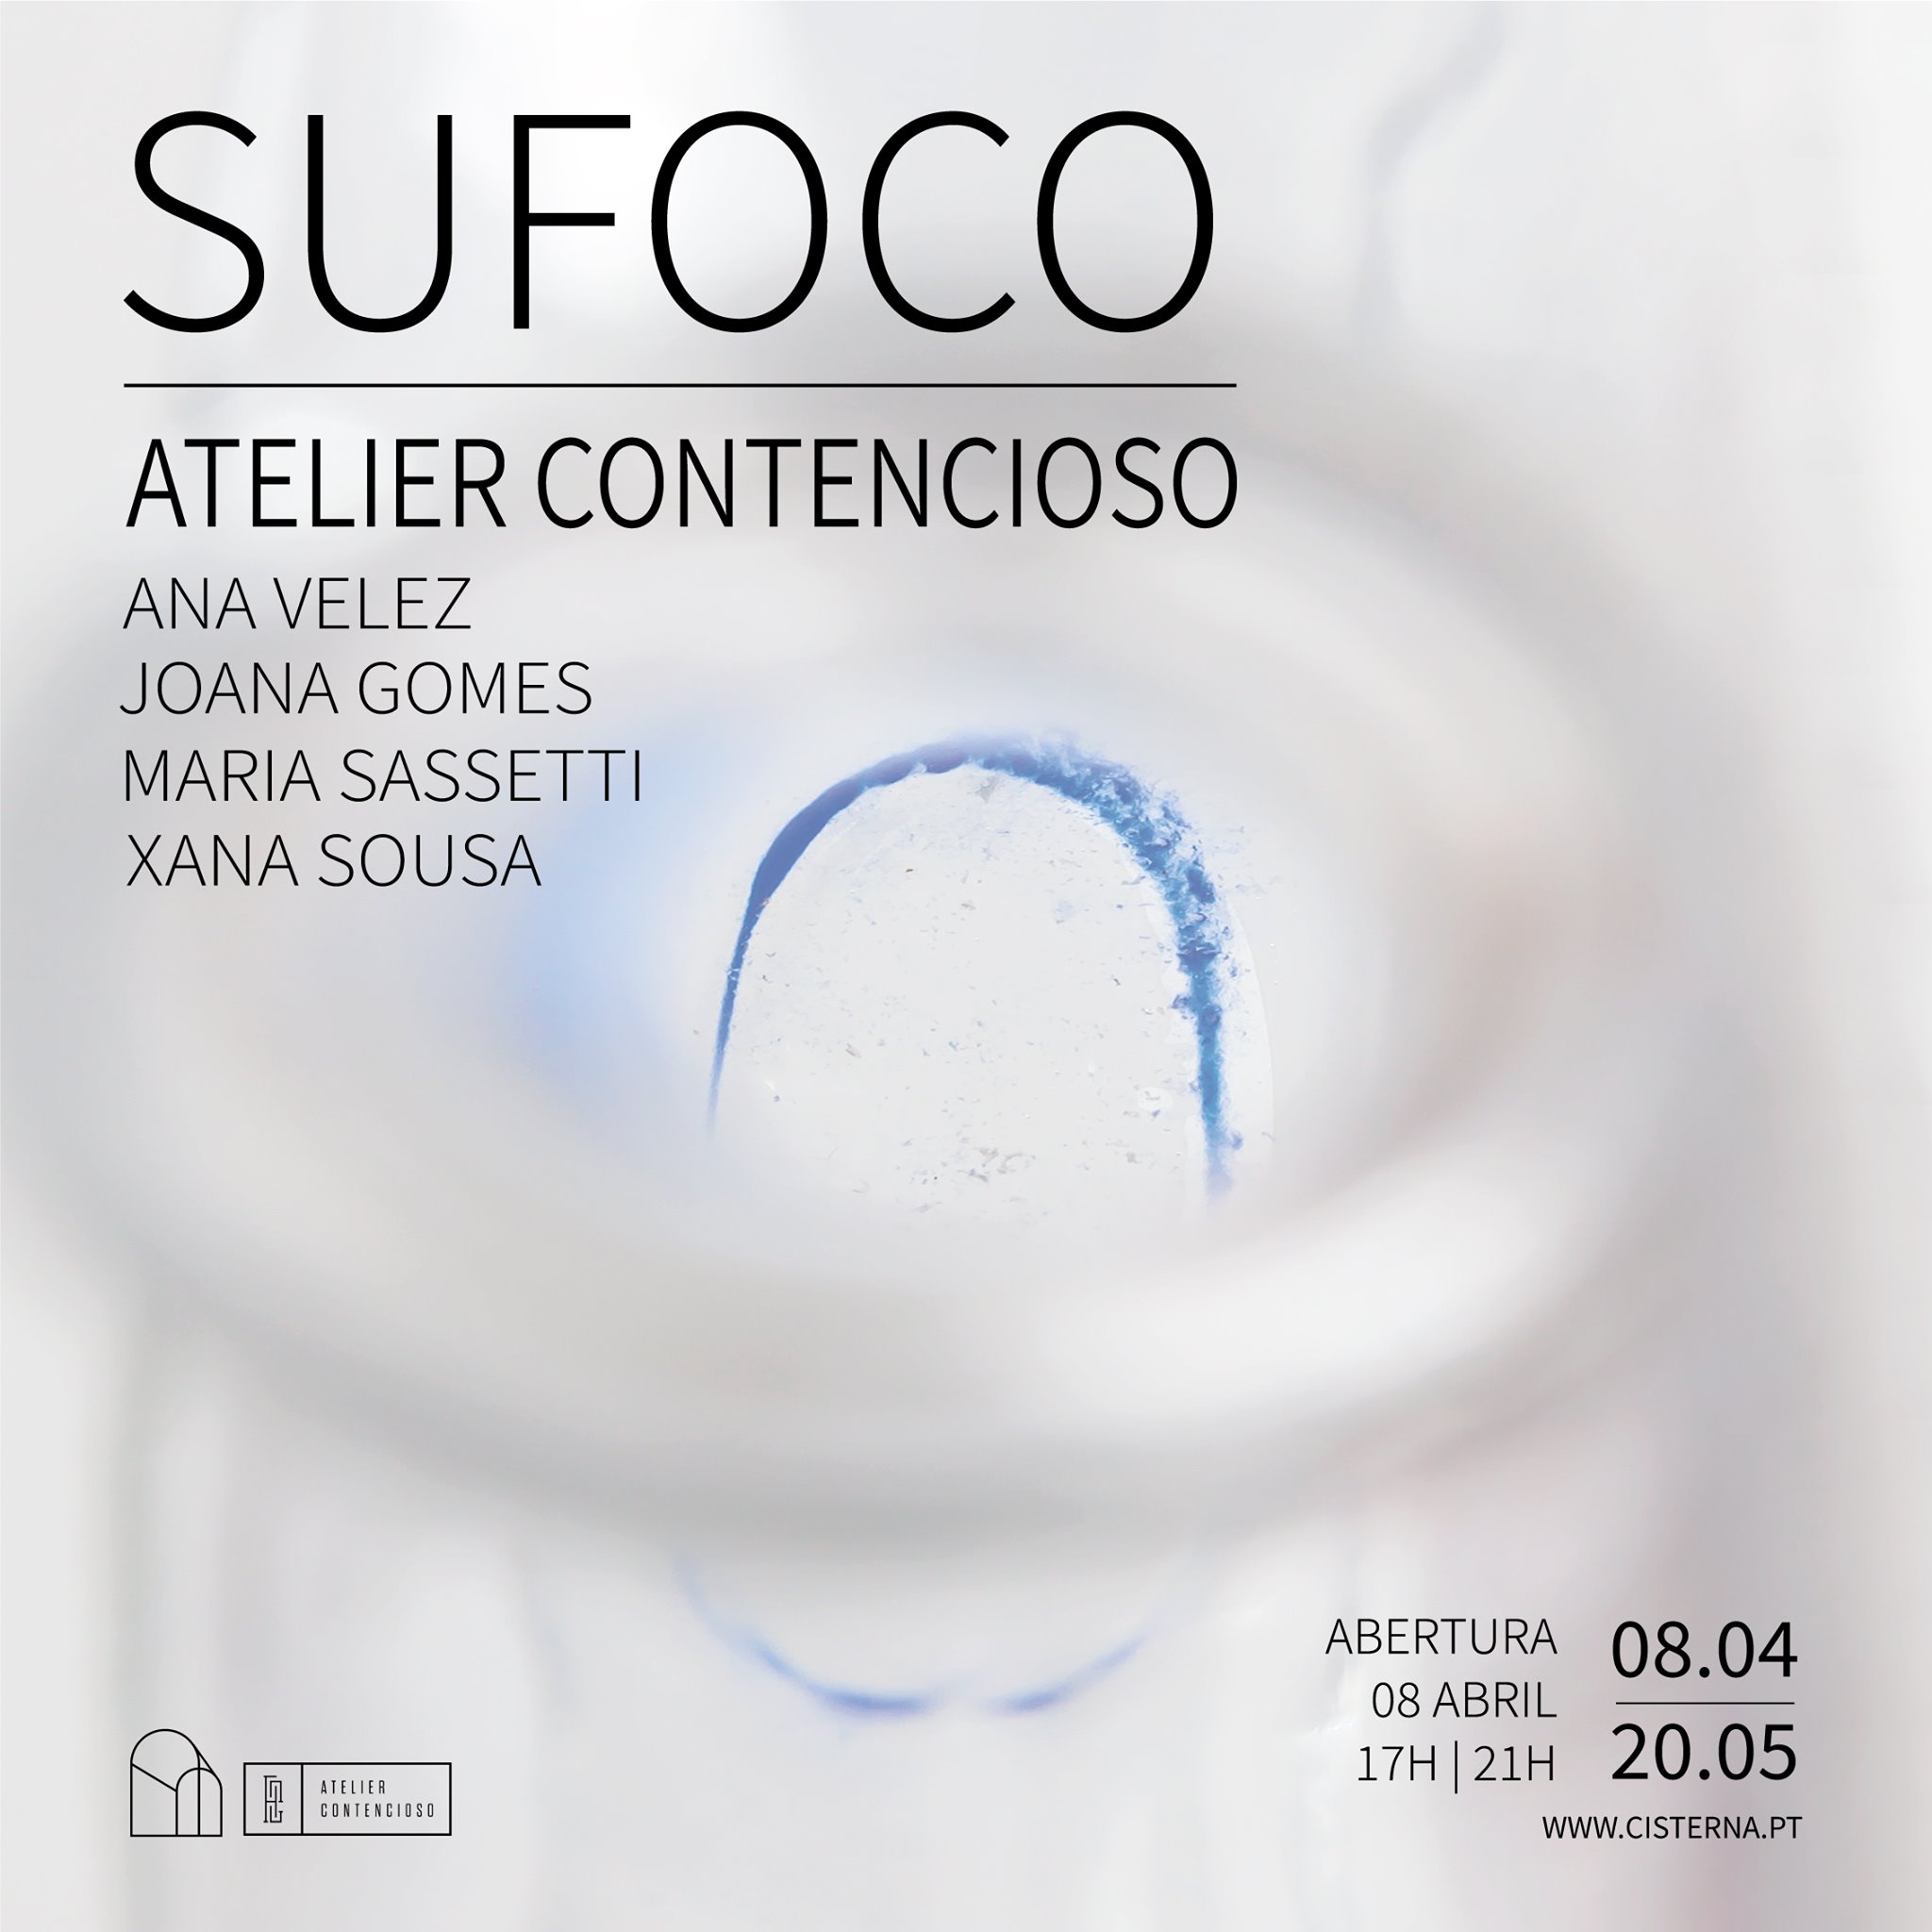 Opening | Atelier Contencioso . SUFOCO